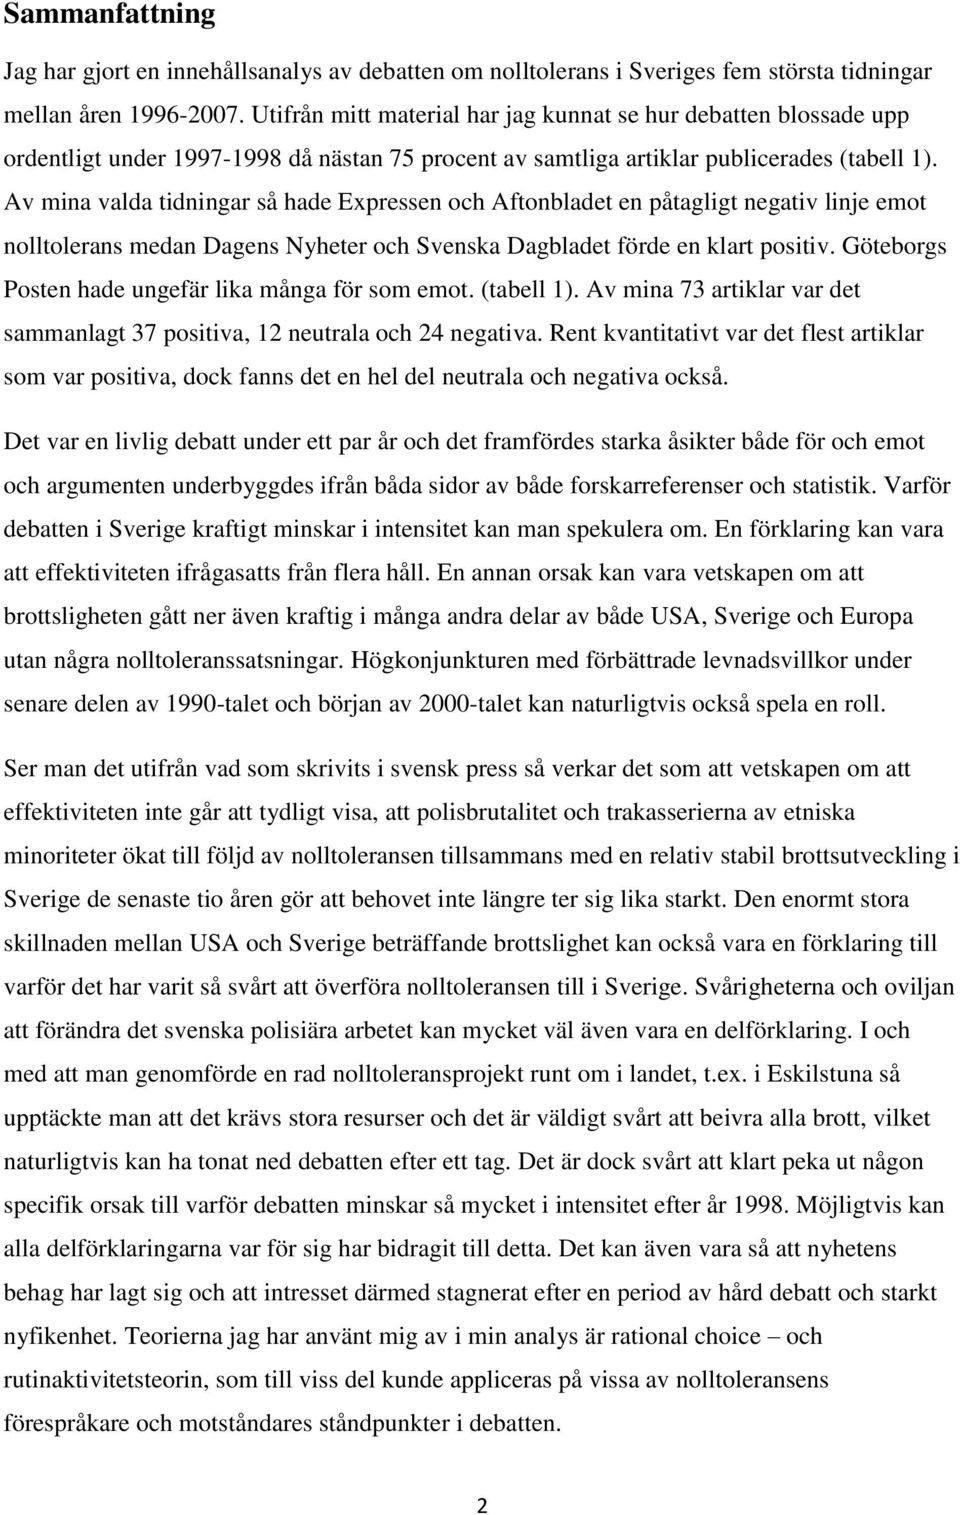 Av mina valda tidningar så hade Expressen och Aftonbladet en påtagligt negativ linje emot nolltolerans medan Dagens Nyheter och Svenska Dagbladet förde en klart positiv.